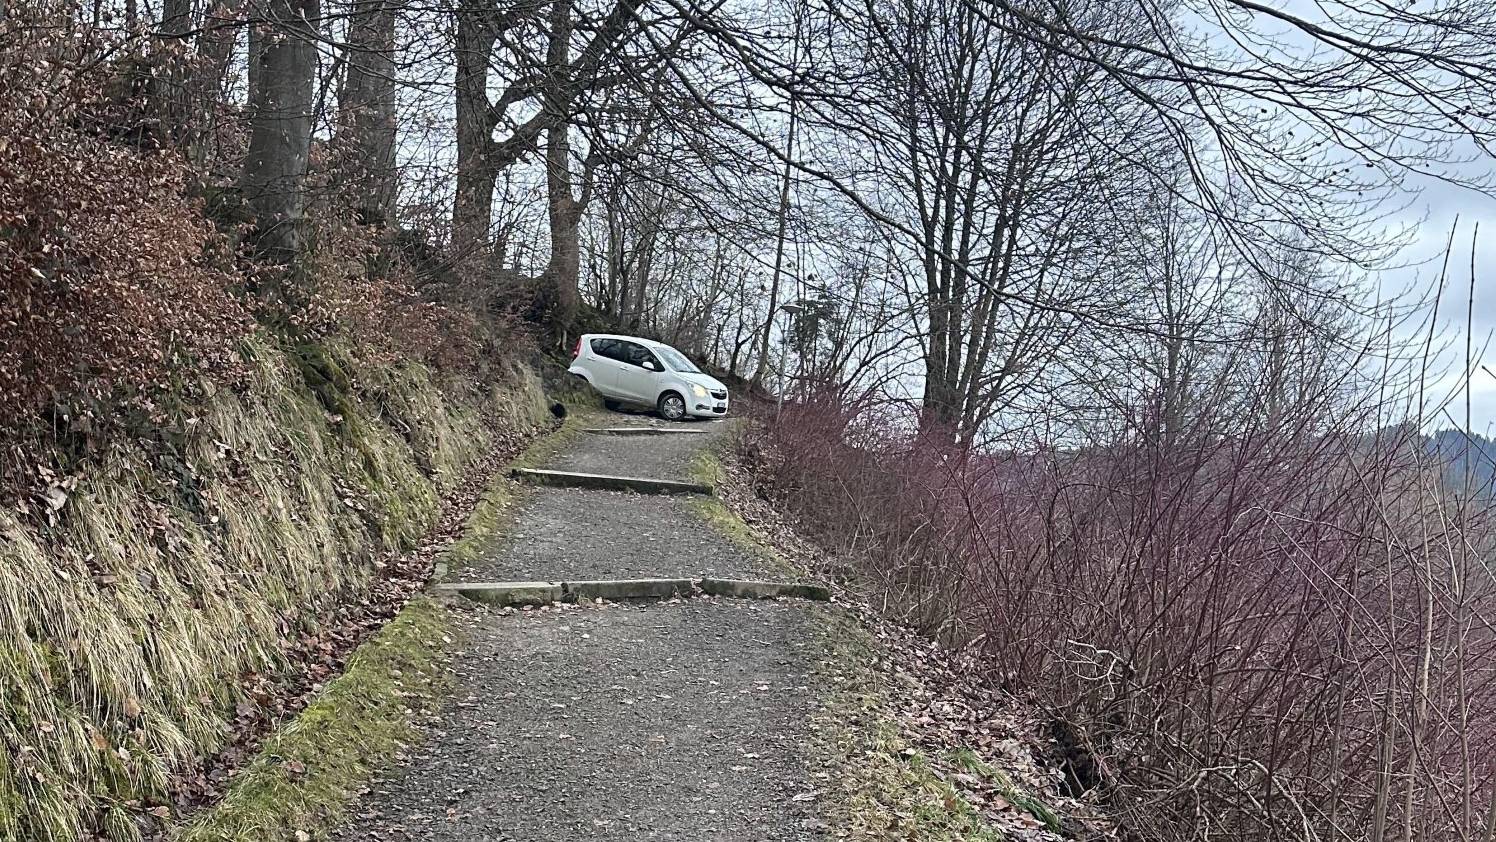 Die Kapo Schwyz hat einen Autofahrer in fahrunfähigem Zustand auf dem Fussweg gestoppt.